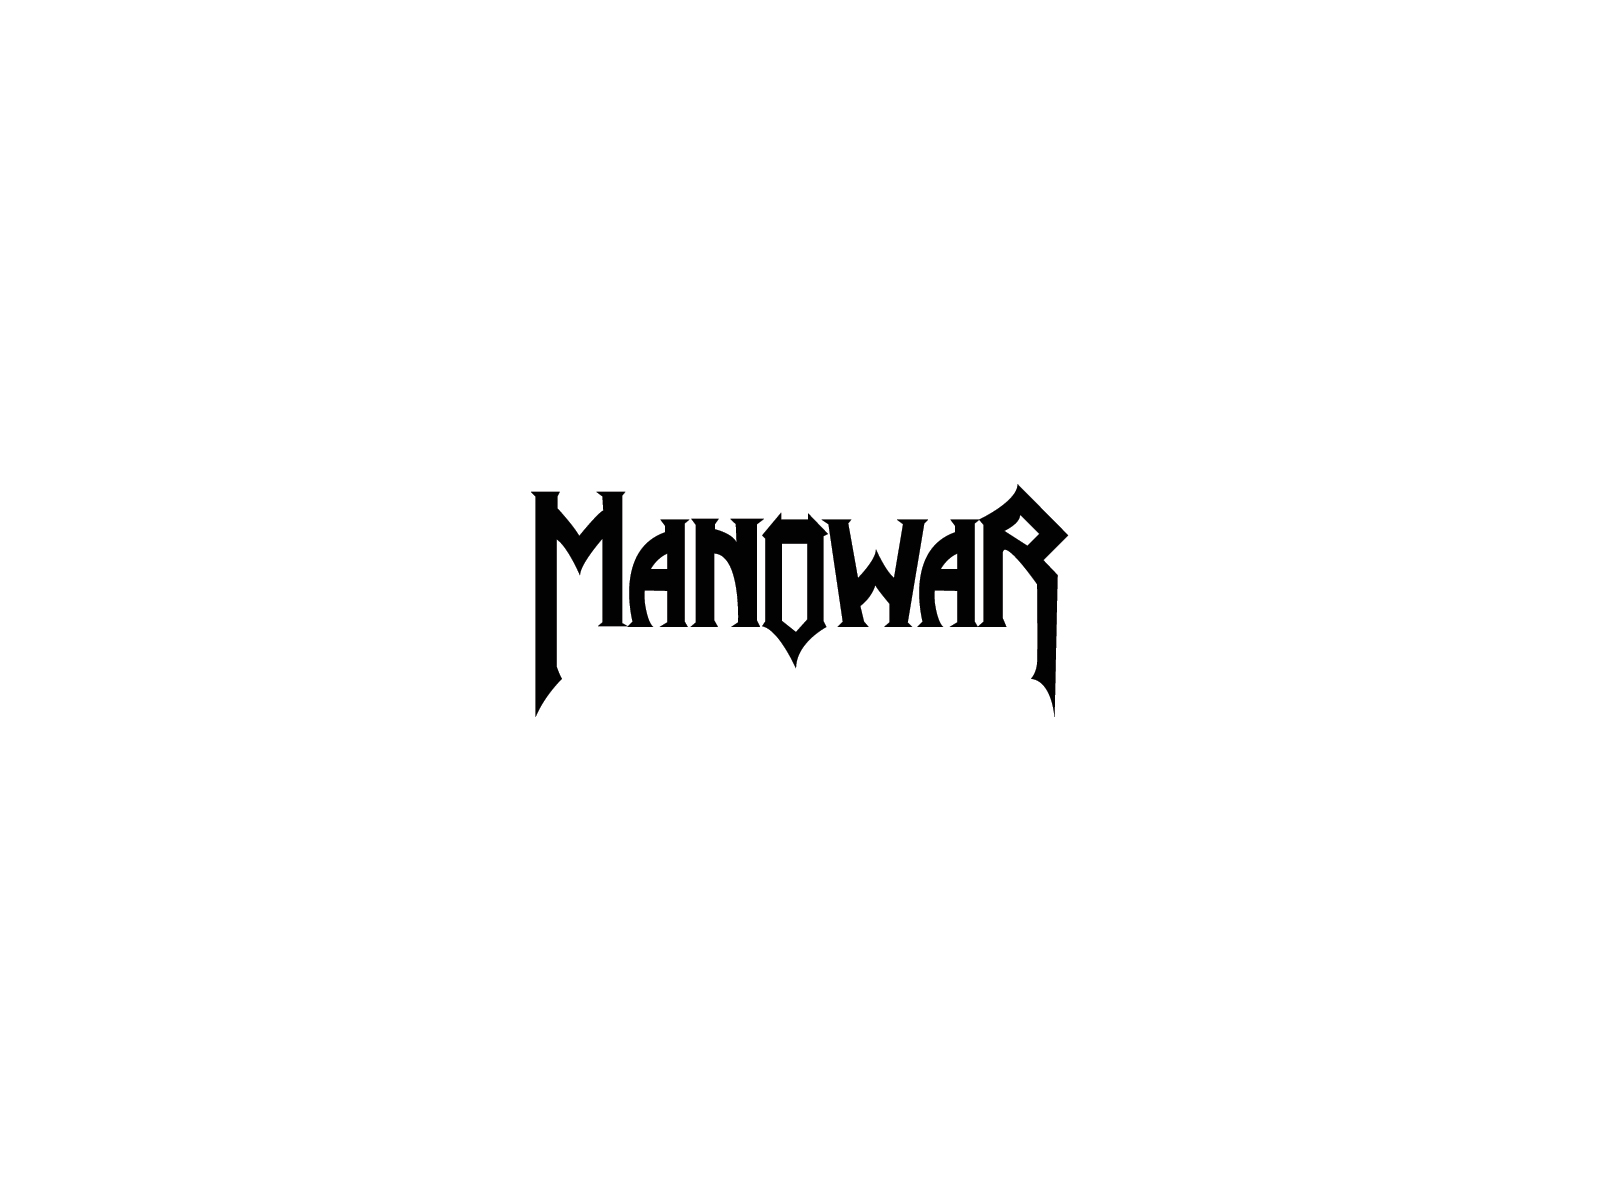 Manowar Wallpapers